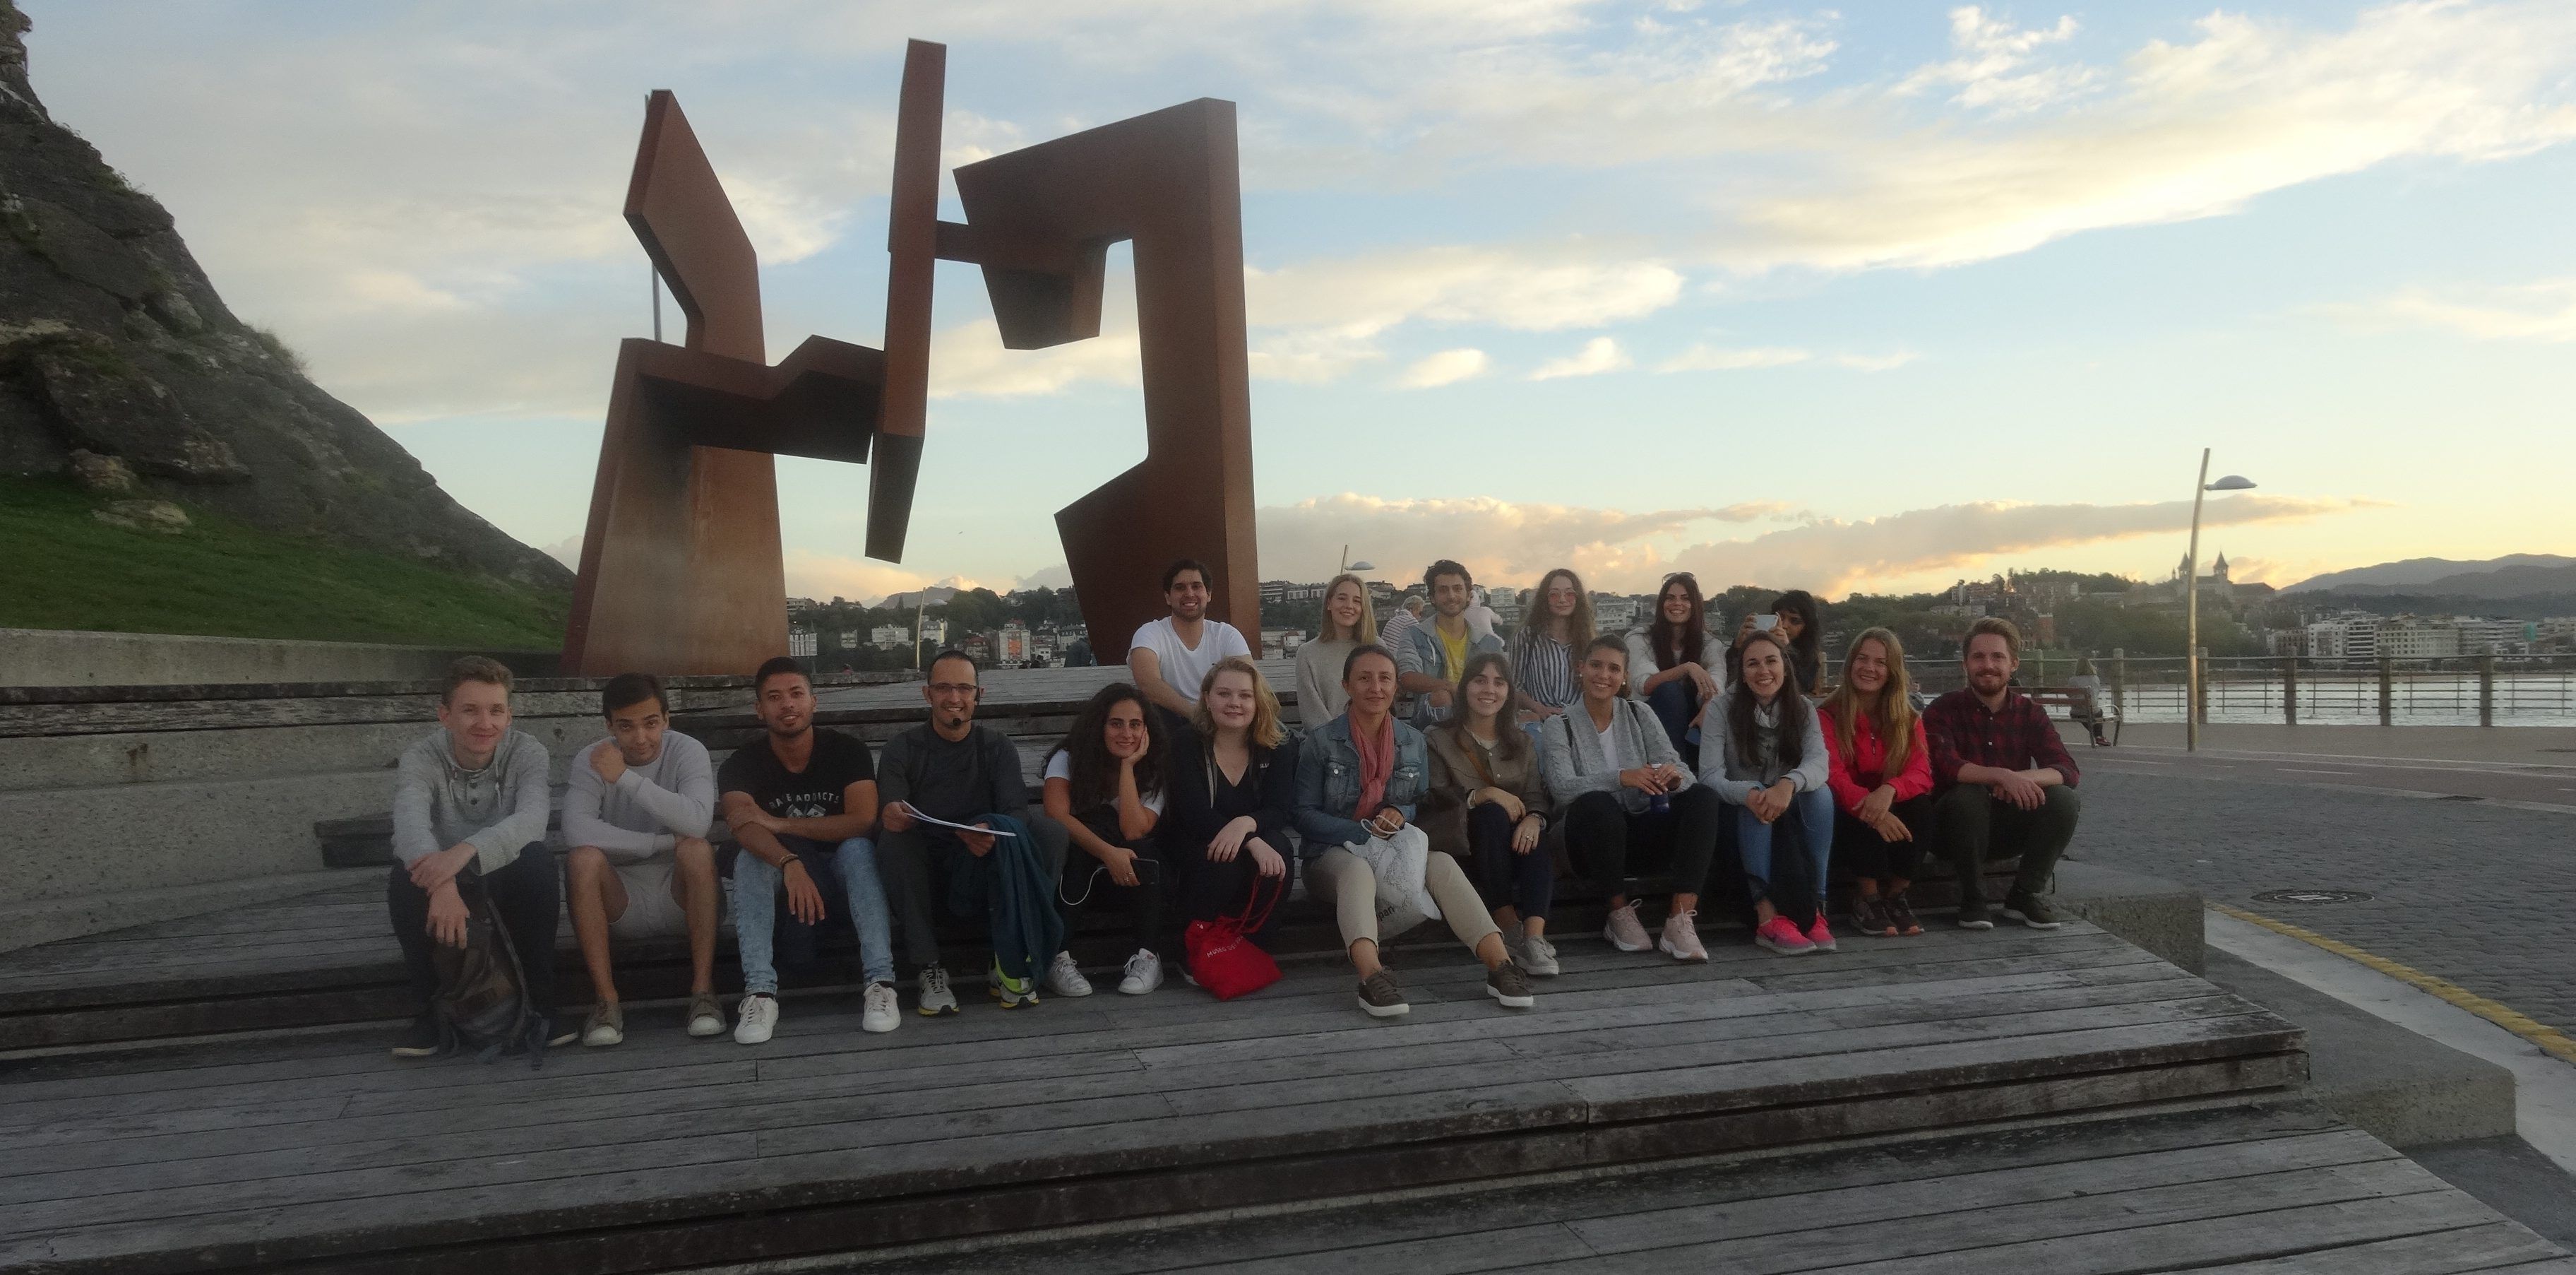 Los estudiantes y profesores de Architecture de la CEU UCH, en el Paseo Nuevo de San Sebastián, del arquitecto Manuel Ruisánchez, junto a la escultura "Construcción vacía", de Jorge Oteiza.